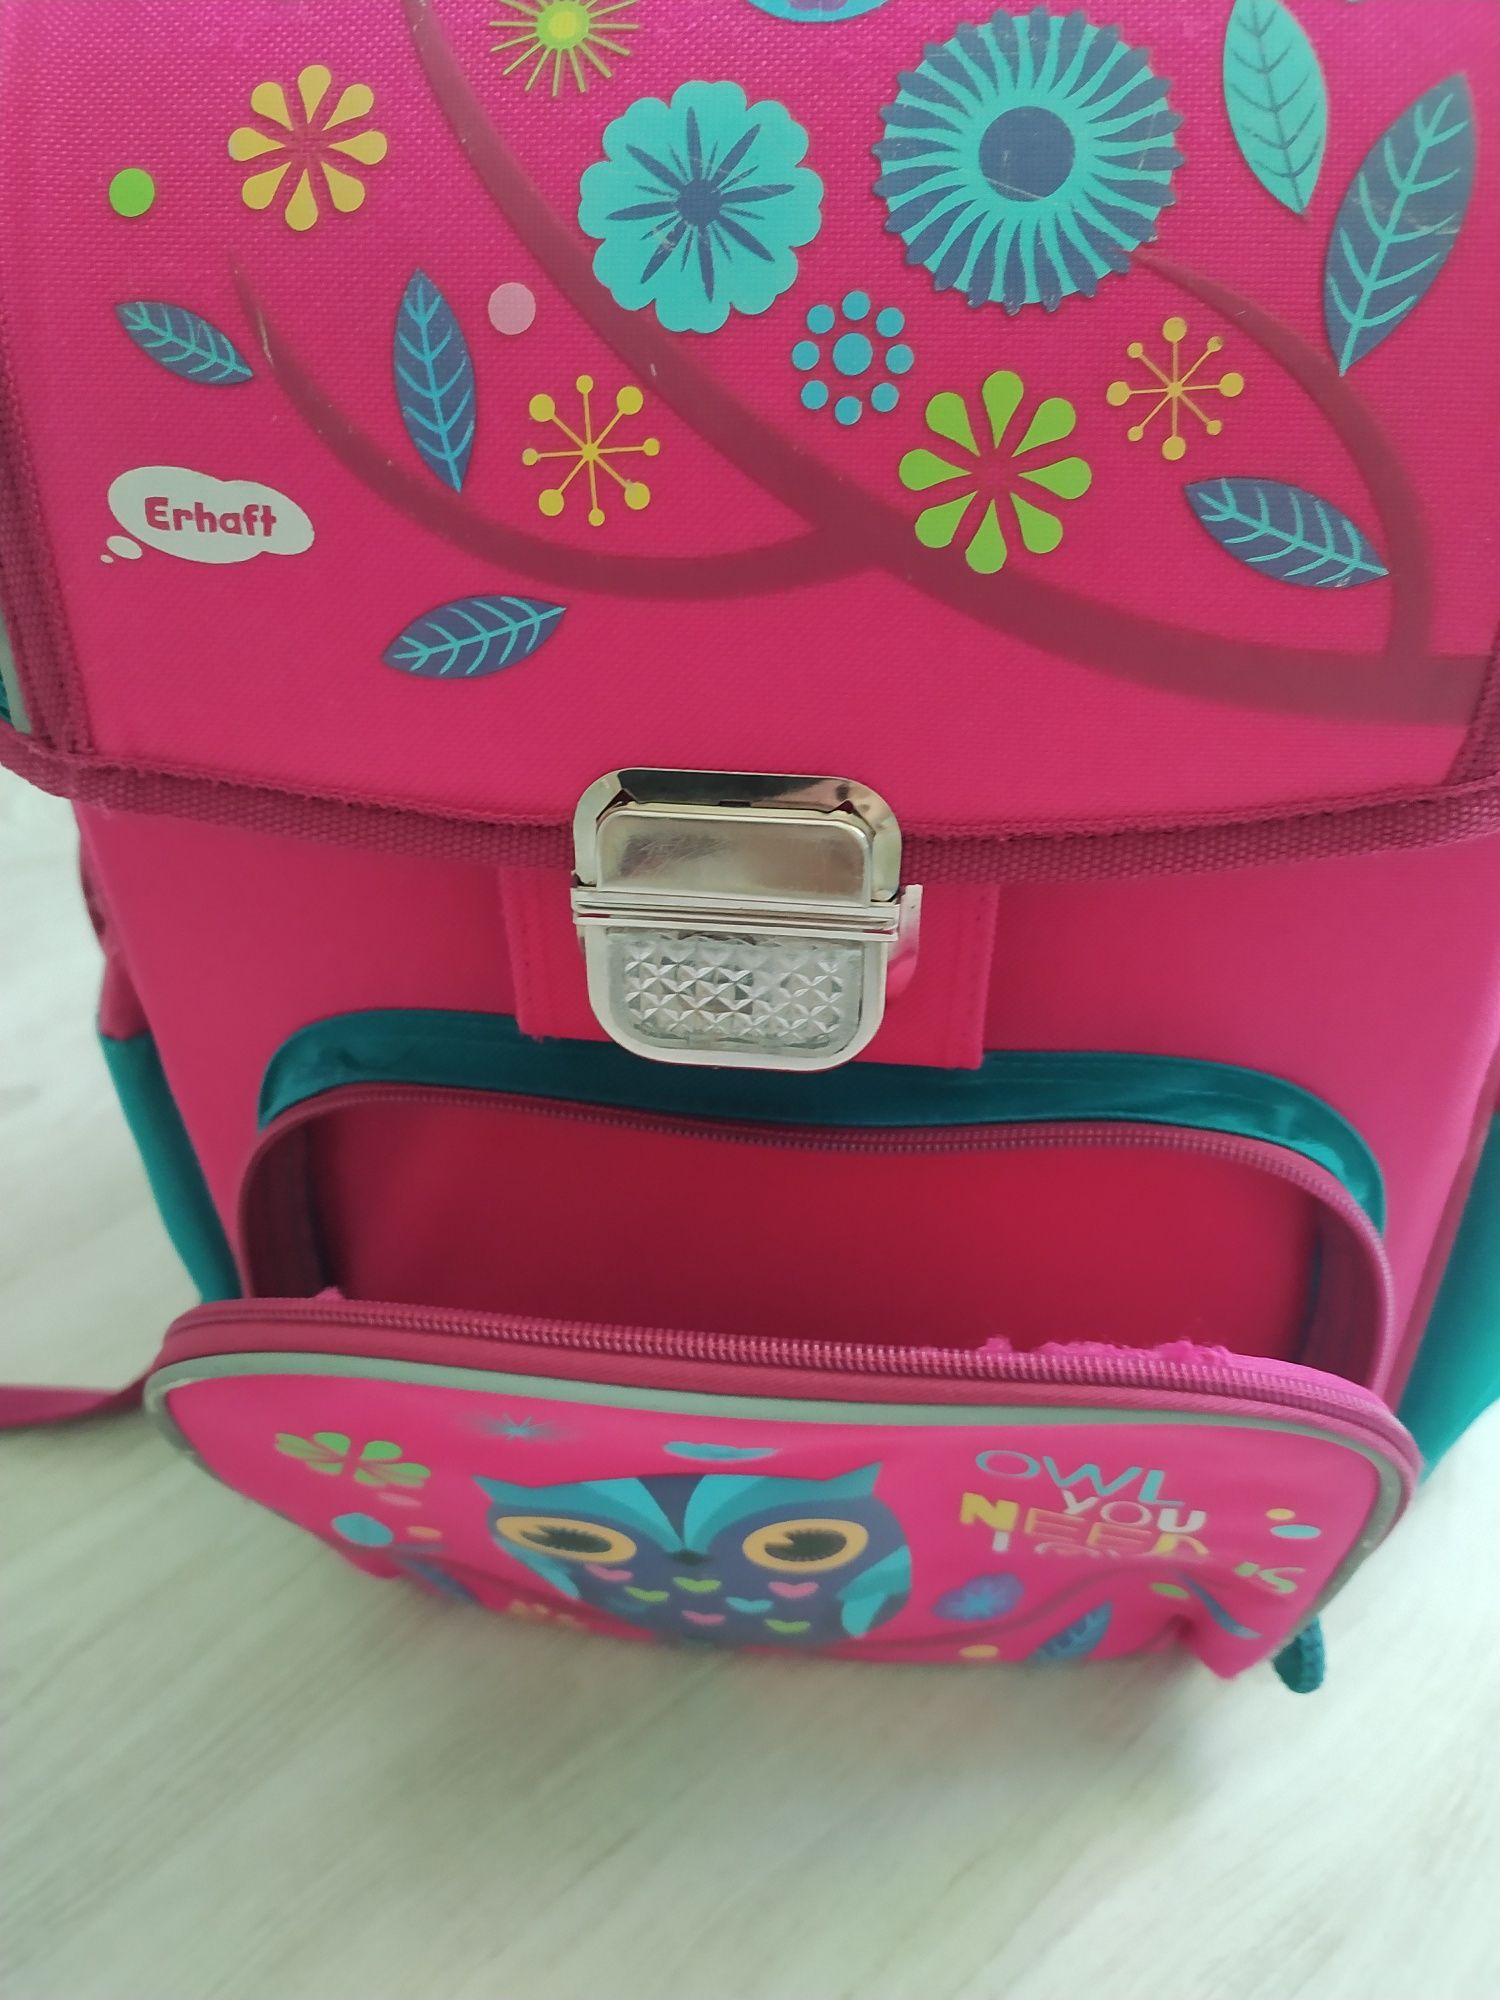 Рюкзак шкільний для дівчинки, портфель, сумка для школи,ранець,ранець.